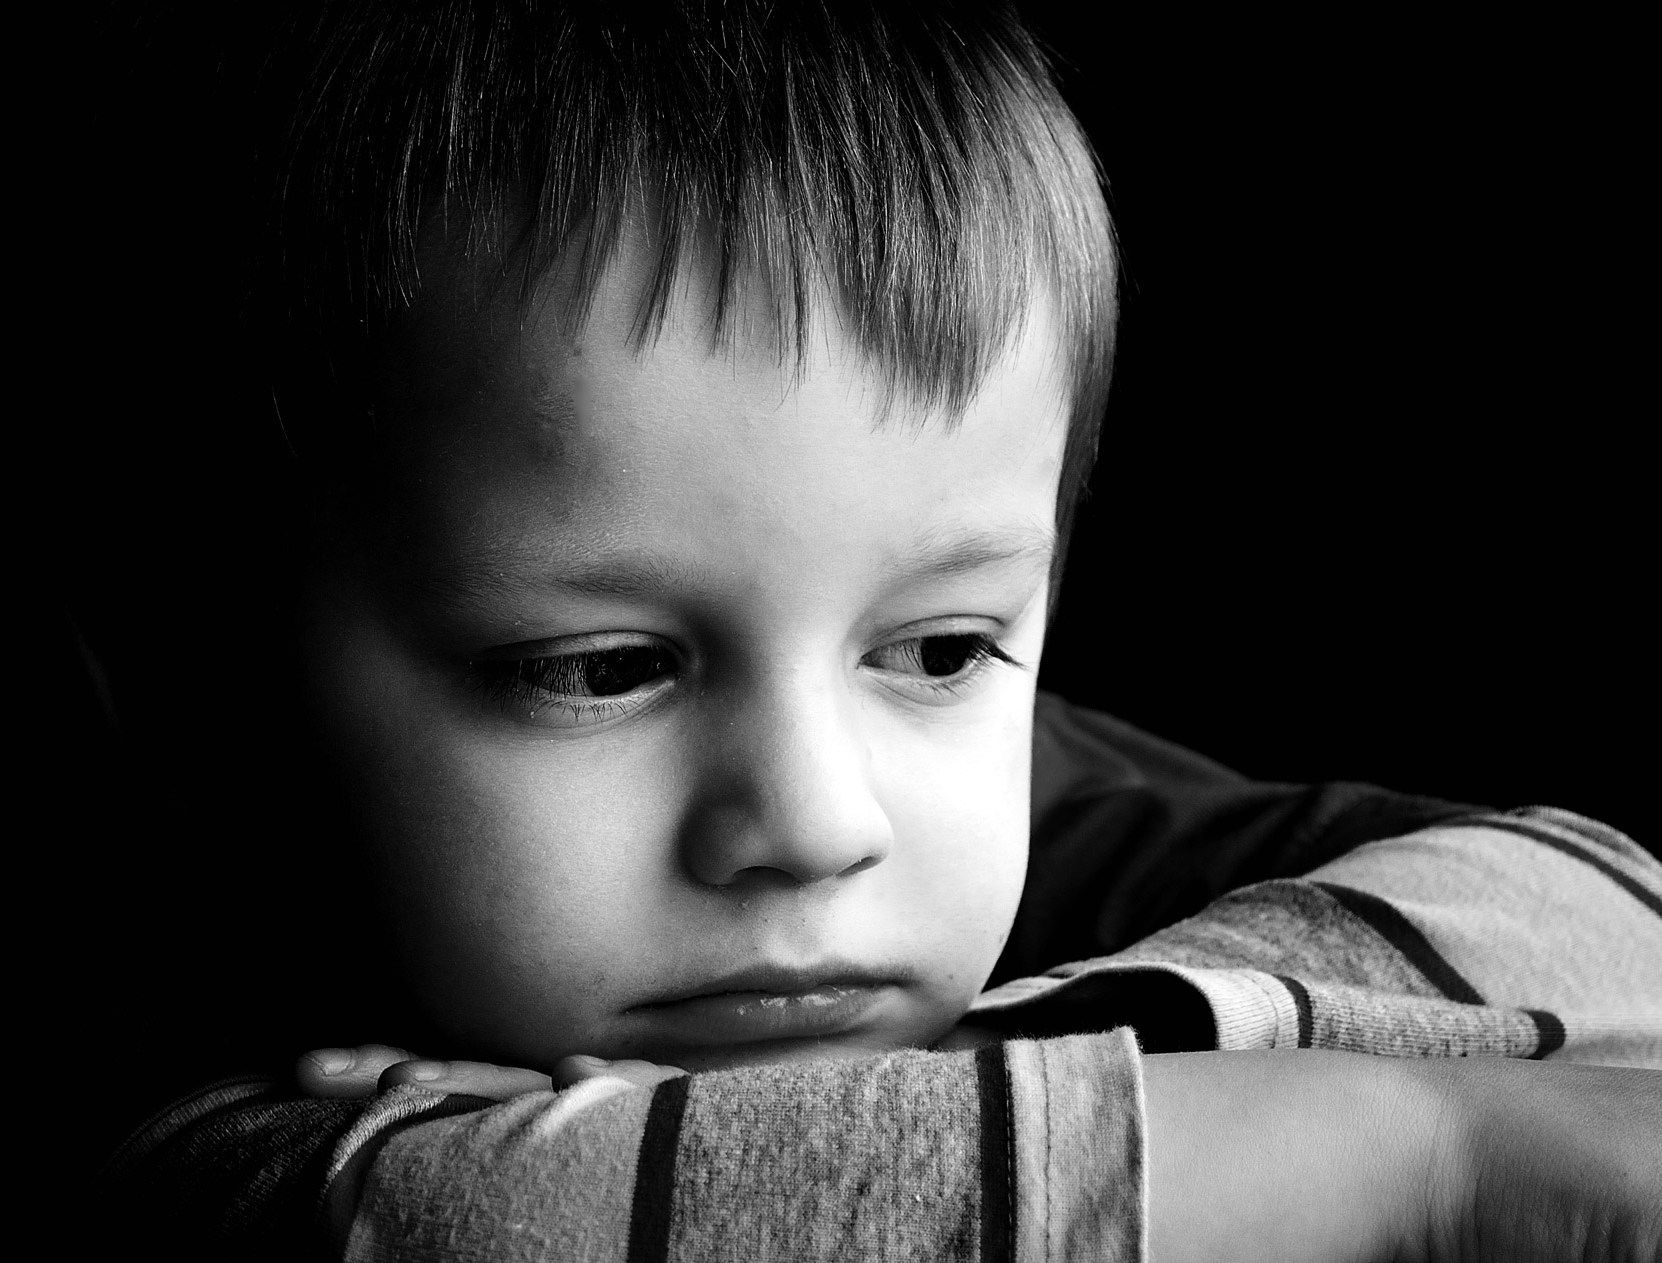 صور اطفال حزينة 2019 رمزيات اطفال تبكي سوبر كايرو